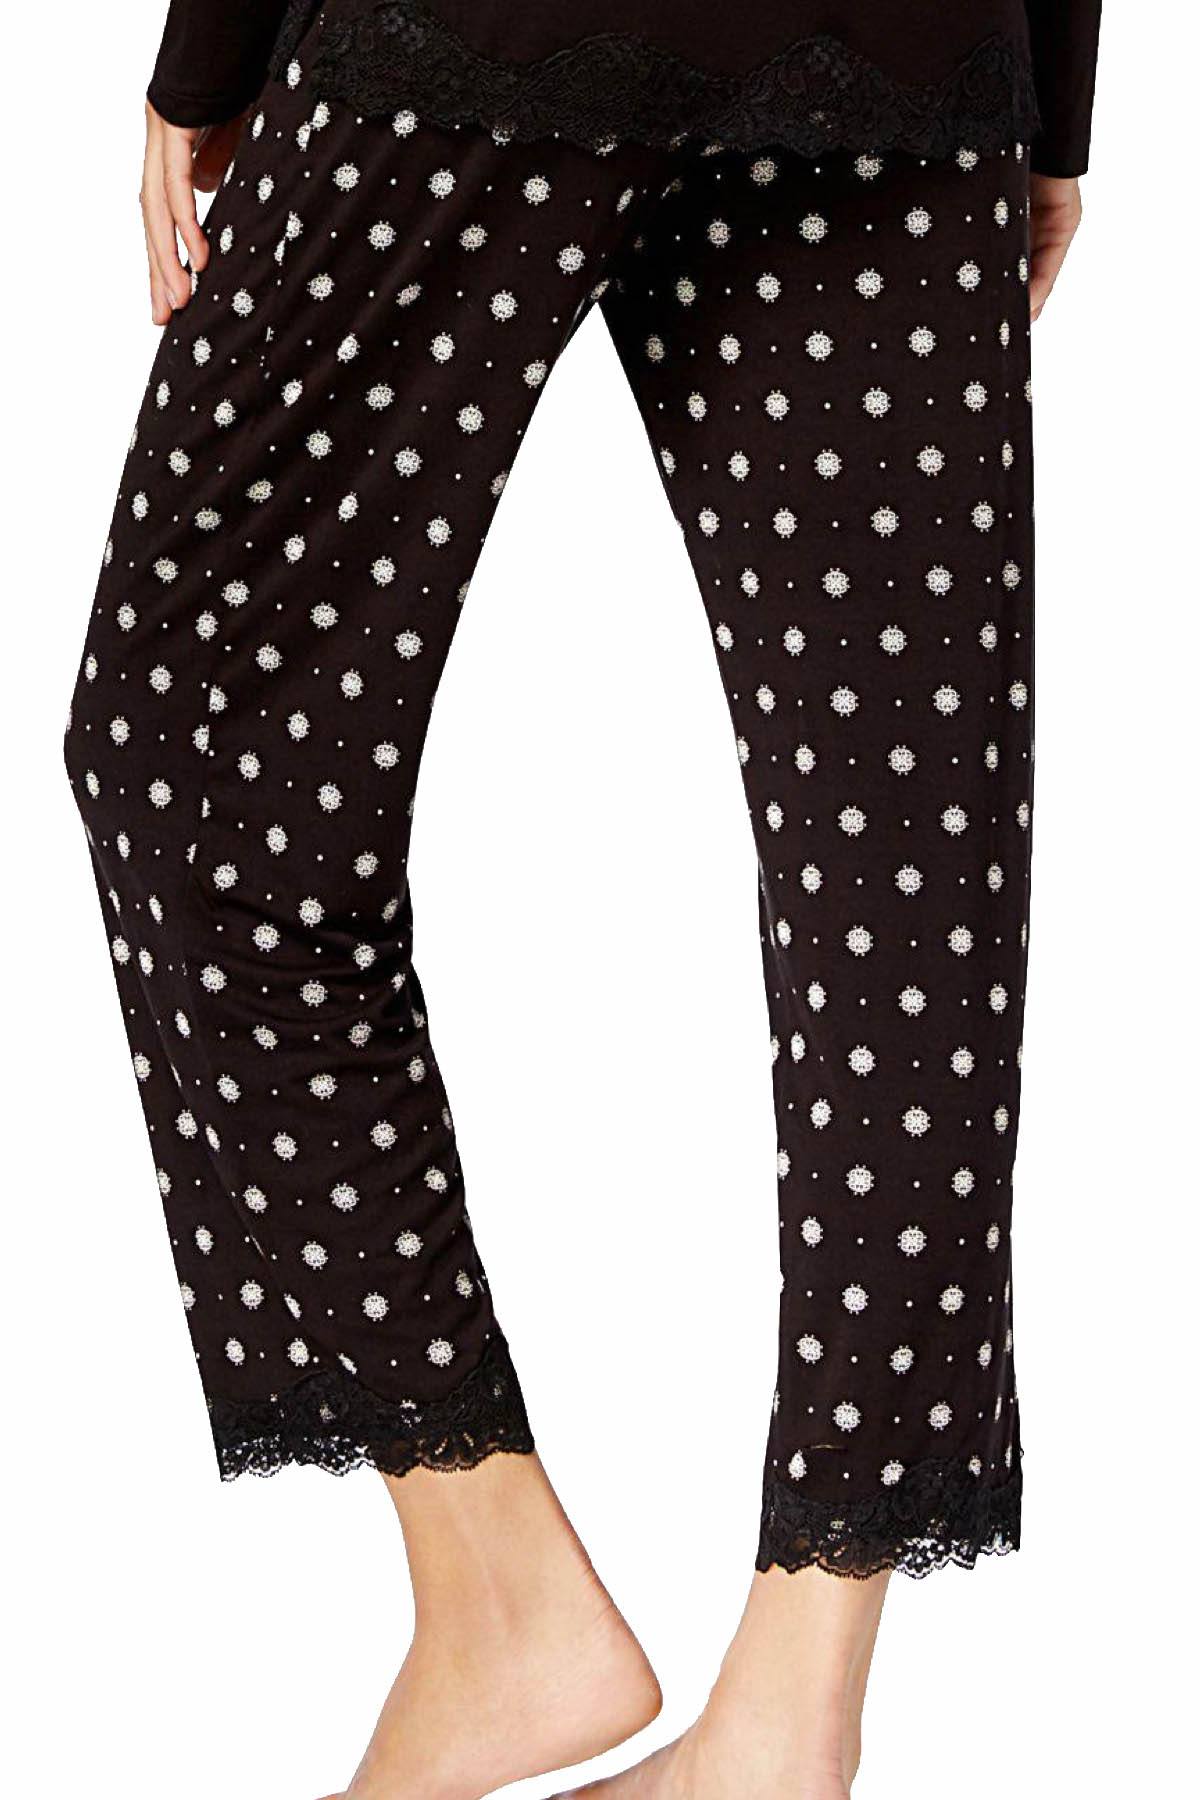 Alfani Lace Trim Printed Pajama Pant in Black Pindot